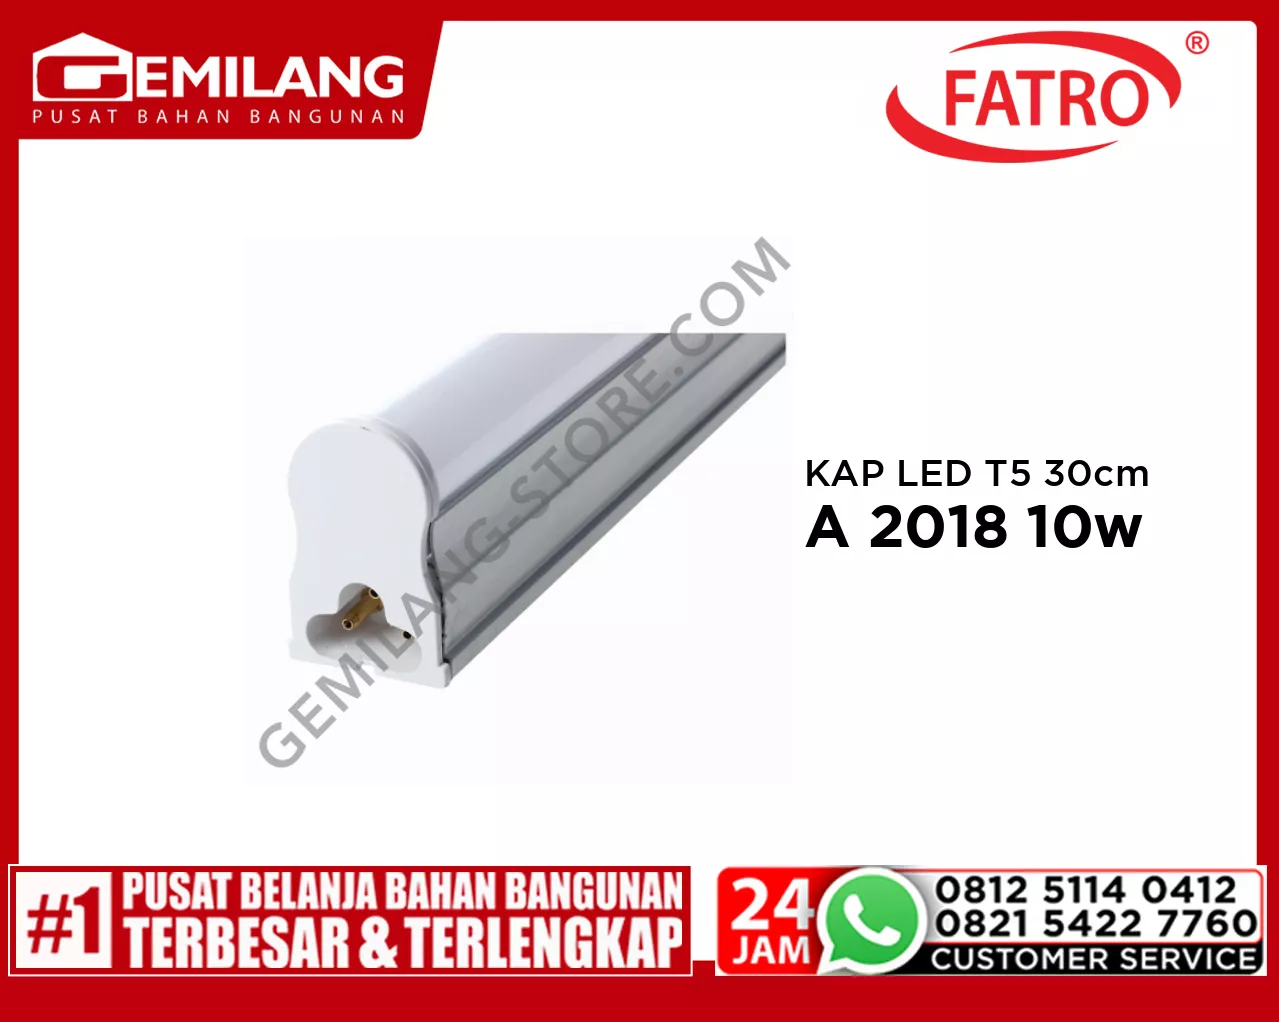 FATRO KAP LED T5 60cm W.WH SA 2018 10w